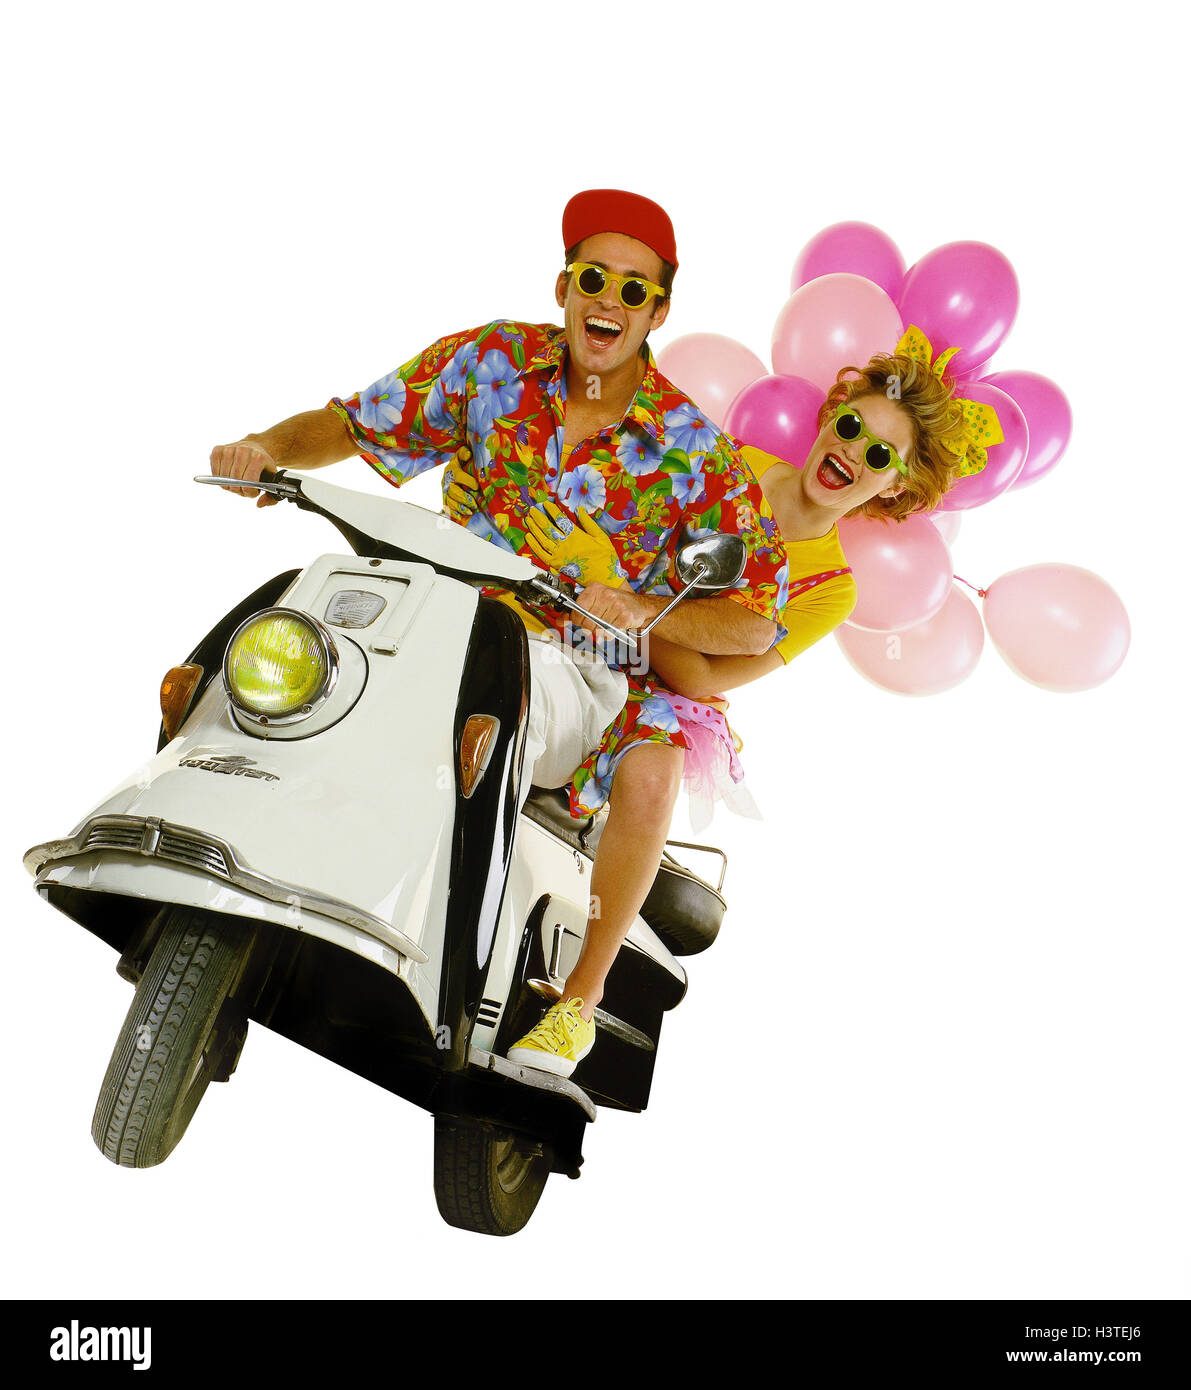 Paar, jung, Sonnenbrille, Motorroller, Ballons, Ausflug, lachen, fahren, glücklich, Paare, Studio, Mann, Frau, Motorrad, Zweirad, Glück, glücklich, Freude, Spaß, Luftballons, cut Outs, Stockfoto